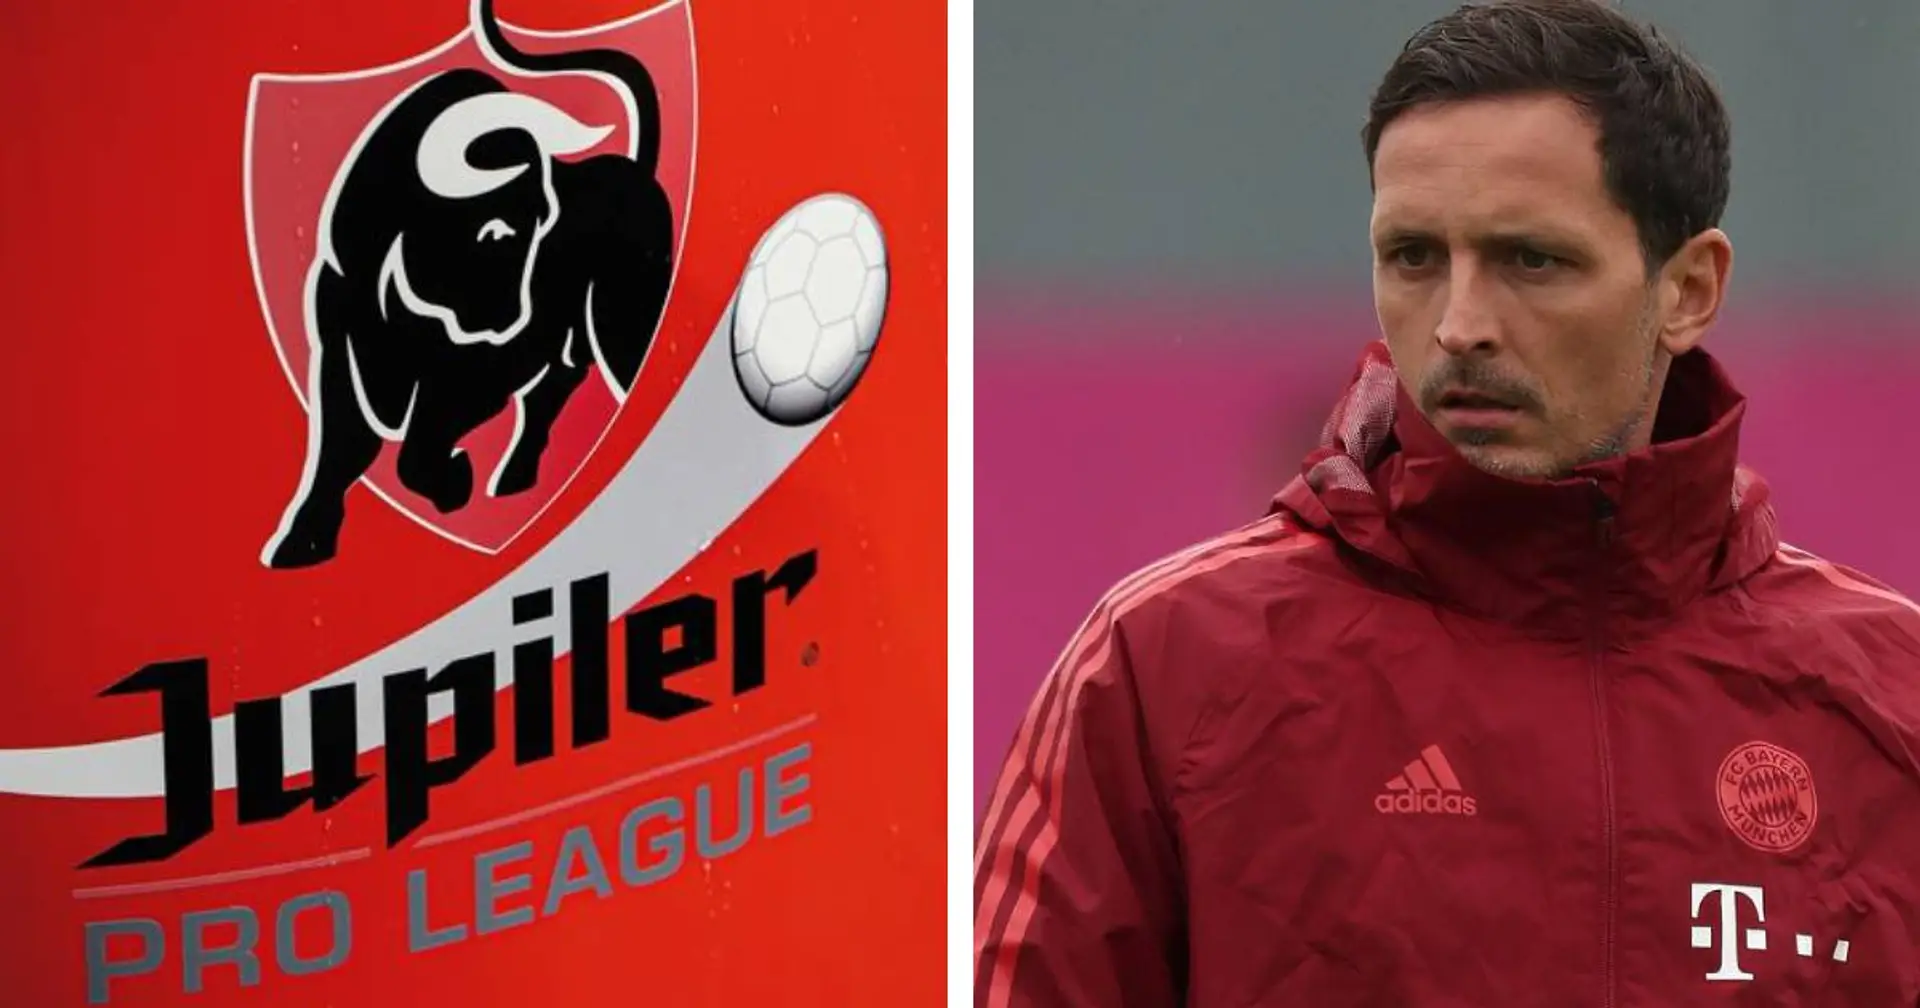 Dino Toppmöller hat bereits Anfrage nach Bayern-Aus: Ihm winkt Cheftrainer-Job in Belgien